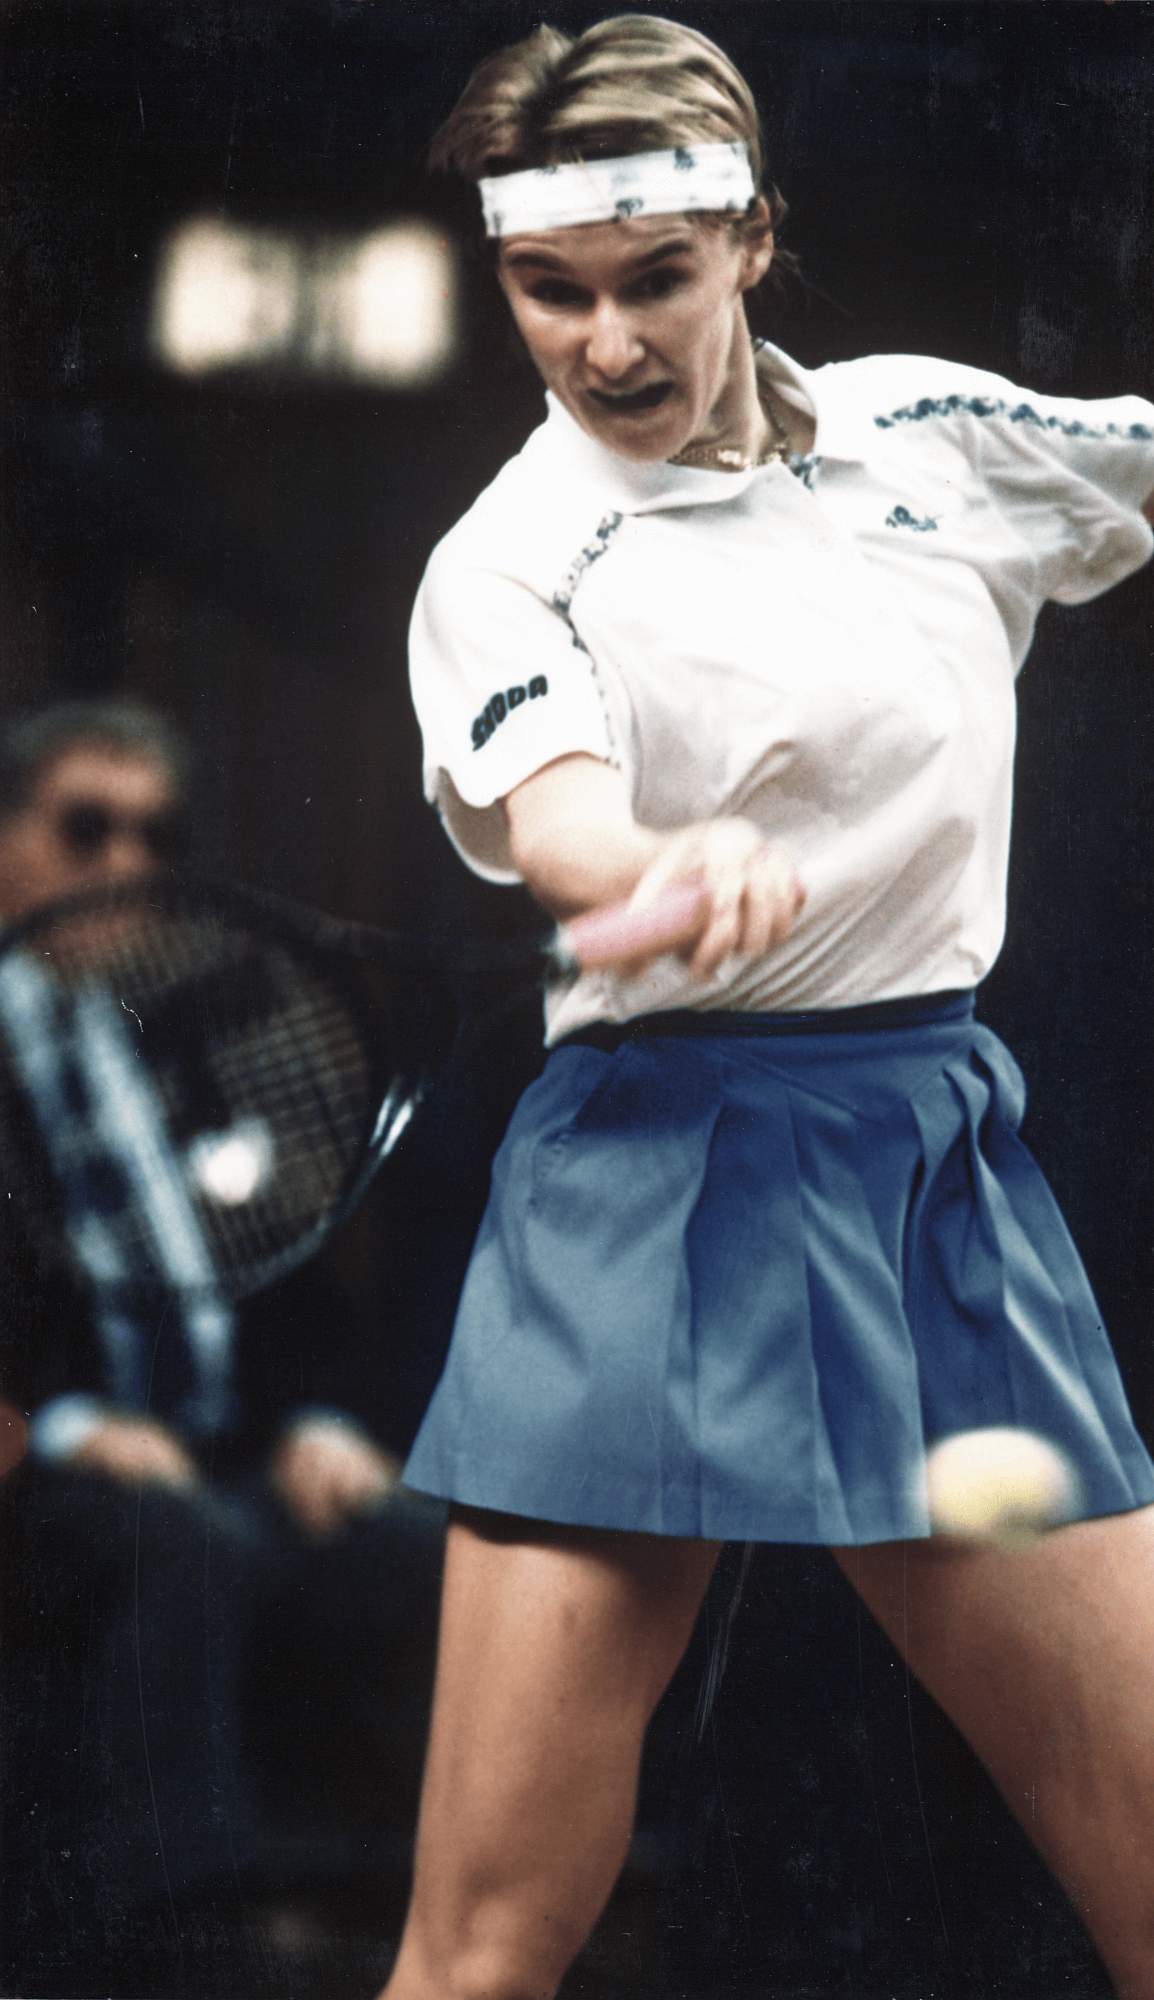 Jana Novotná (Czech) action shot during a match with Steffi Graf (German)